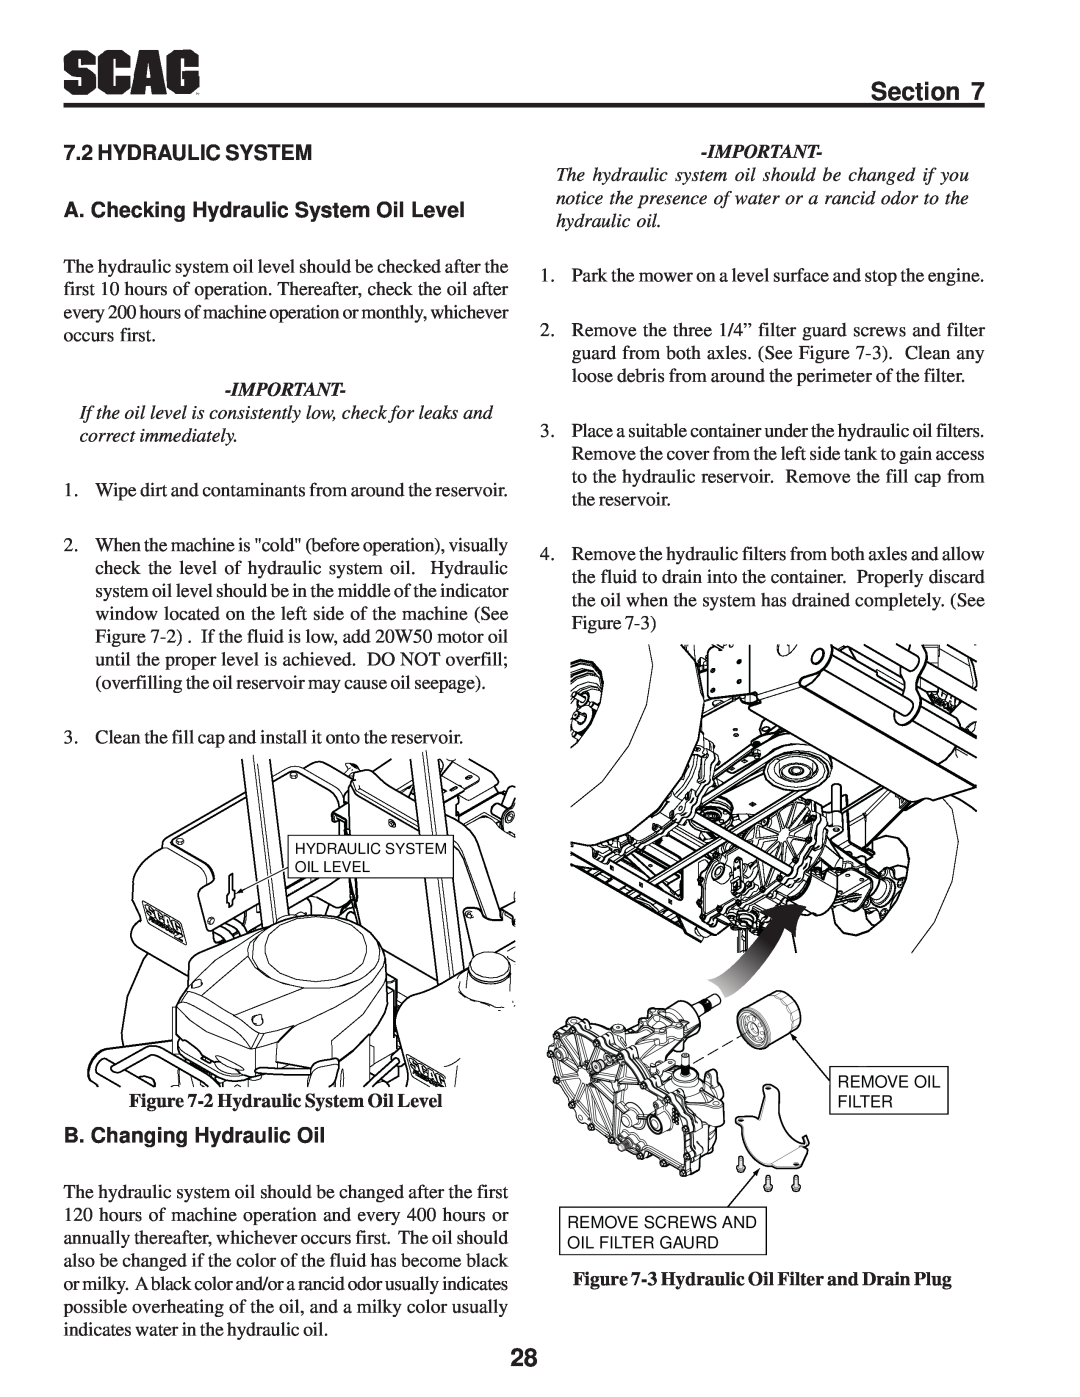 Scag Power Equipment SFZ manual HYDRAULIC SYSTEM A. Checking Hydraulic System Oil Level, B. Changing Hydraulic Oil 